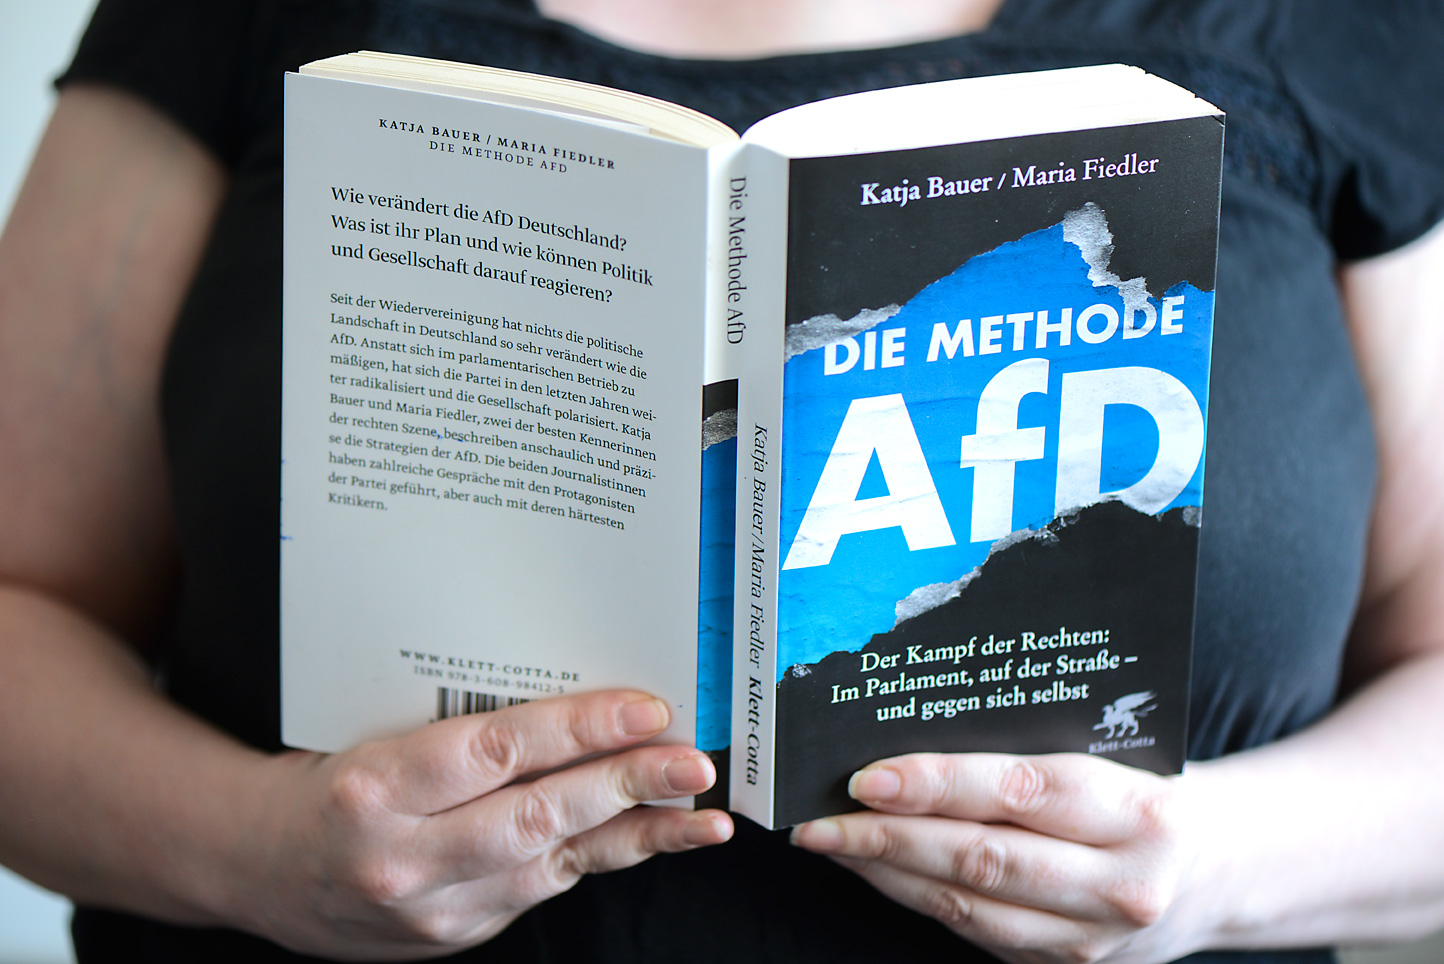 Auf dem Foto zu sehen: Buchcover "Die Methode AfD" von Katja Bauer und Maria Fiedler